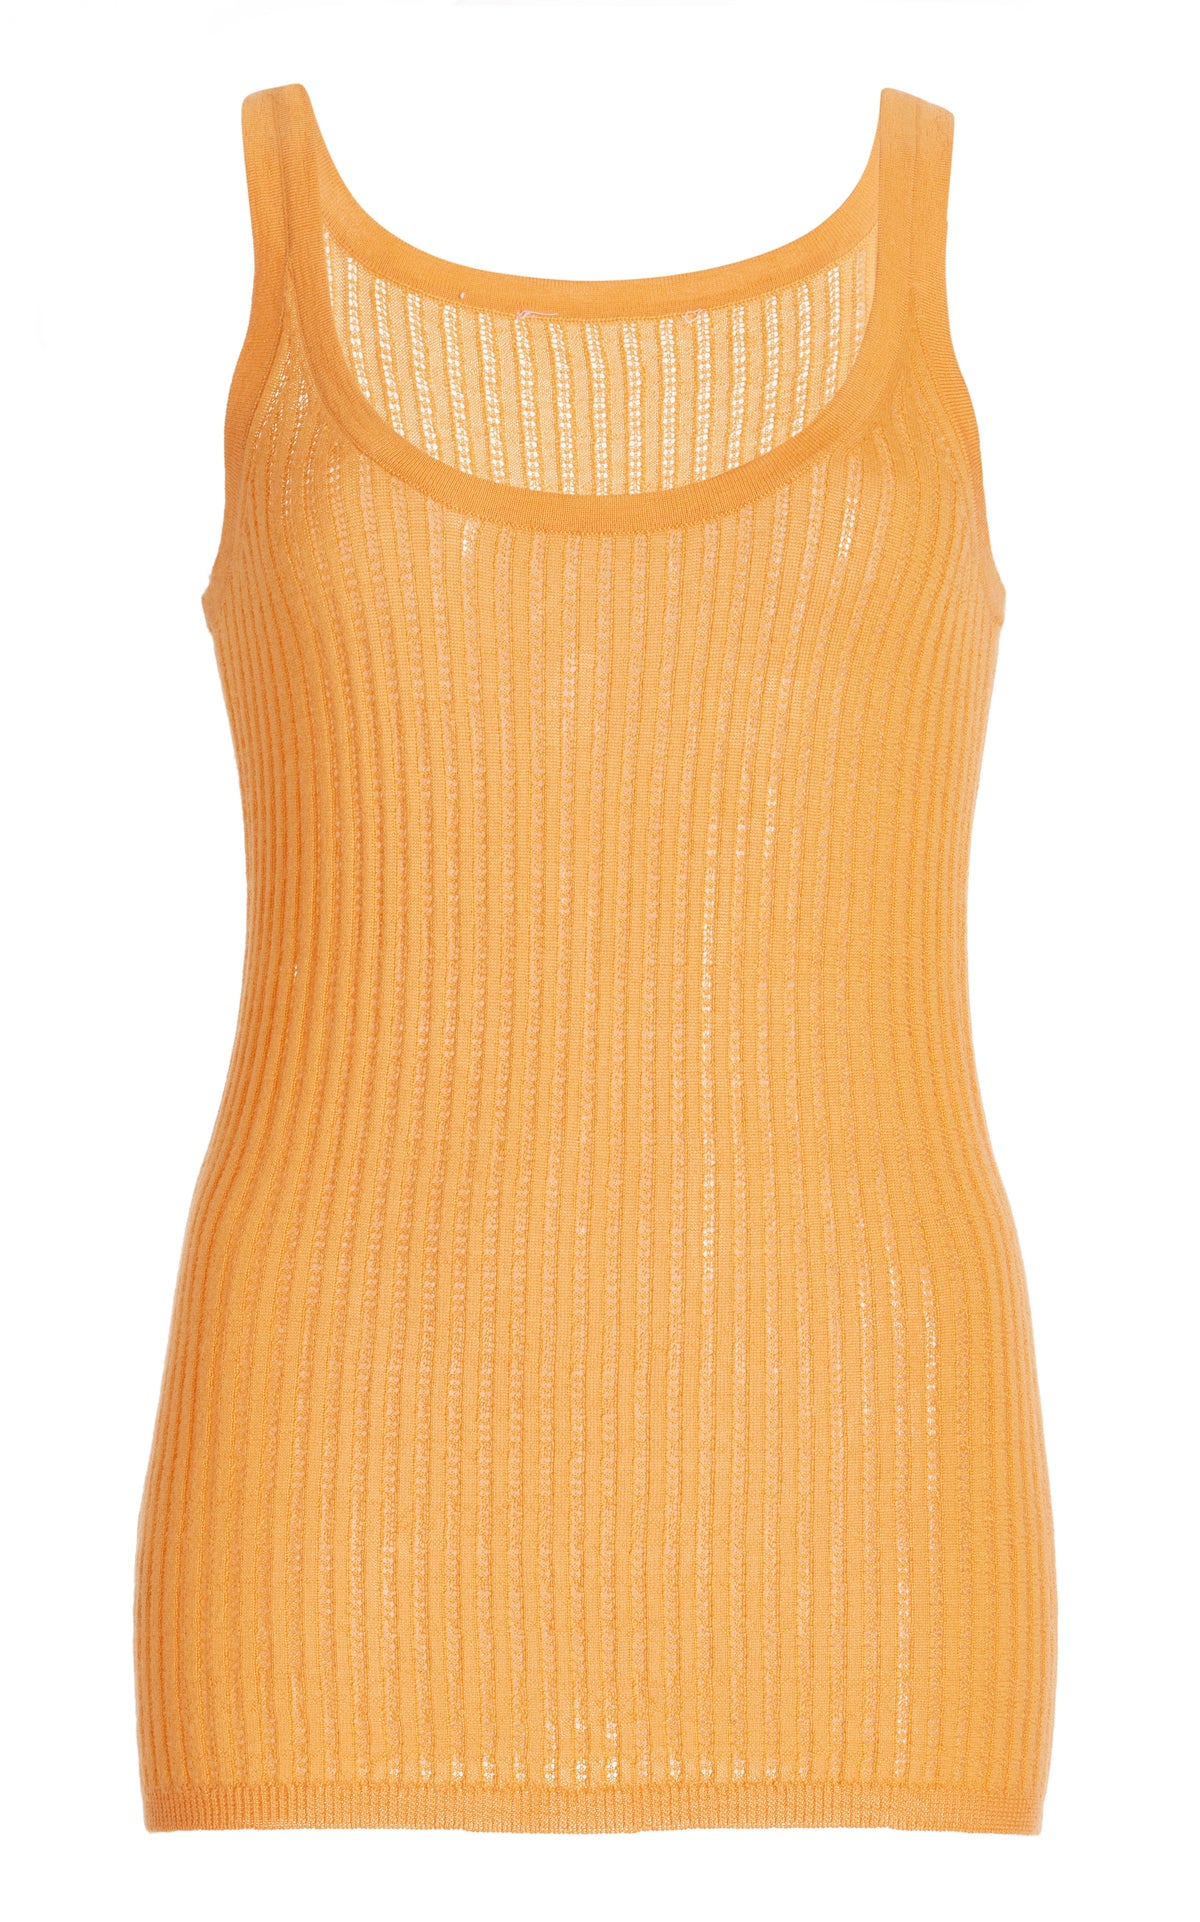 Graham Pointelle Knit Tank Top in Fluorescent Orange Cashmere Silk